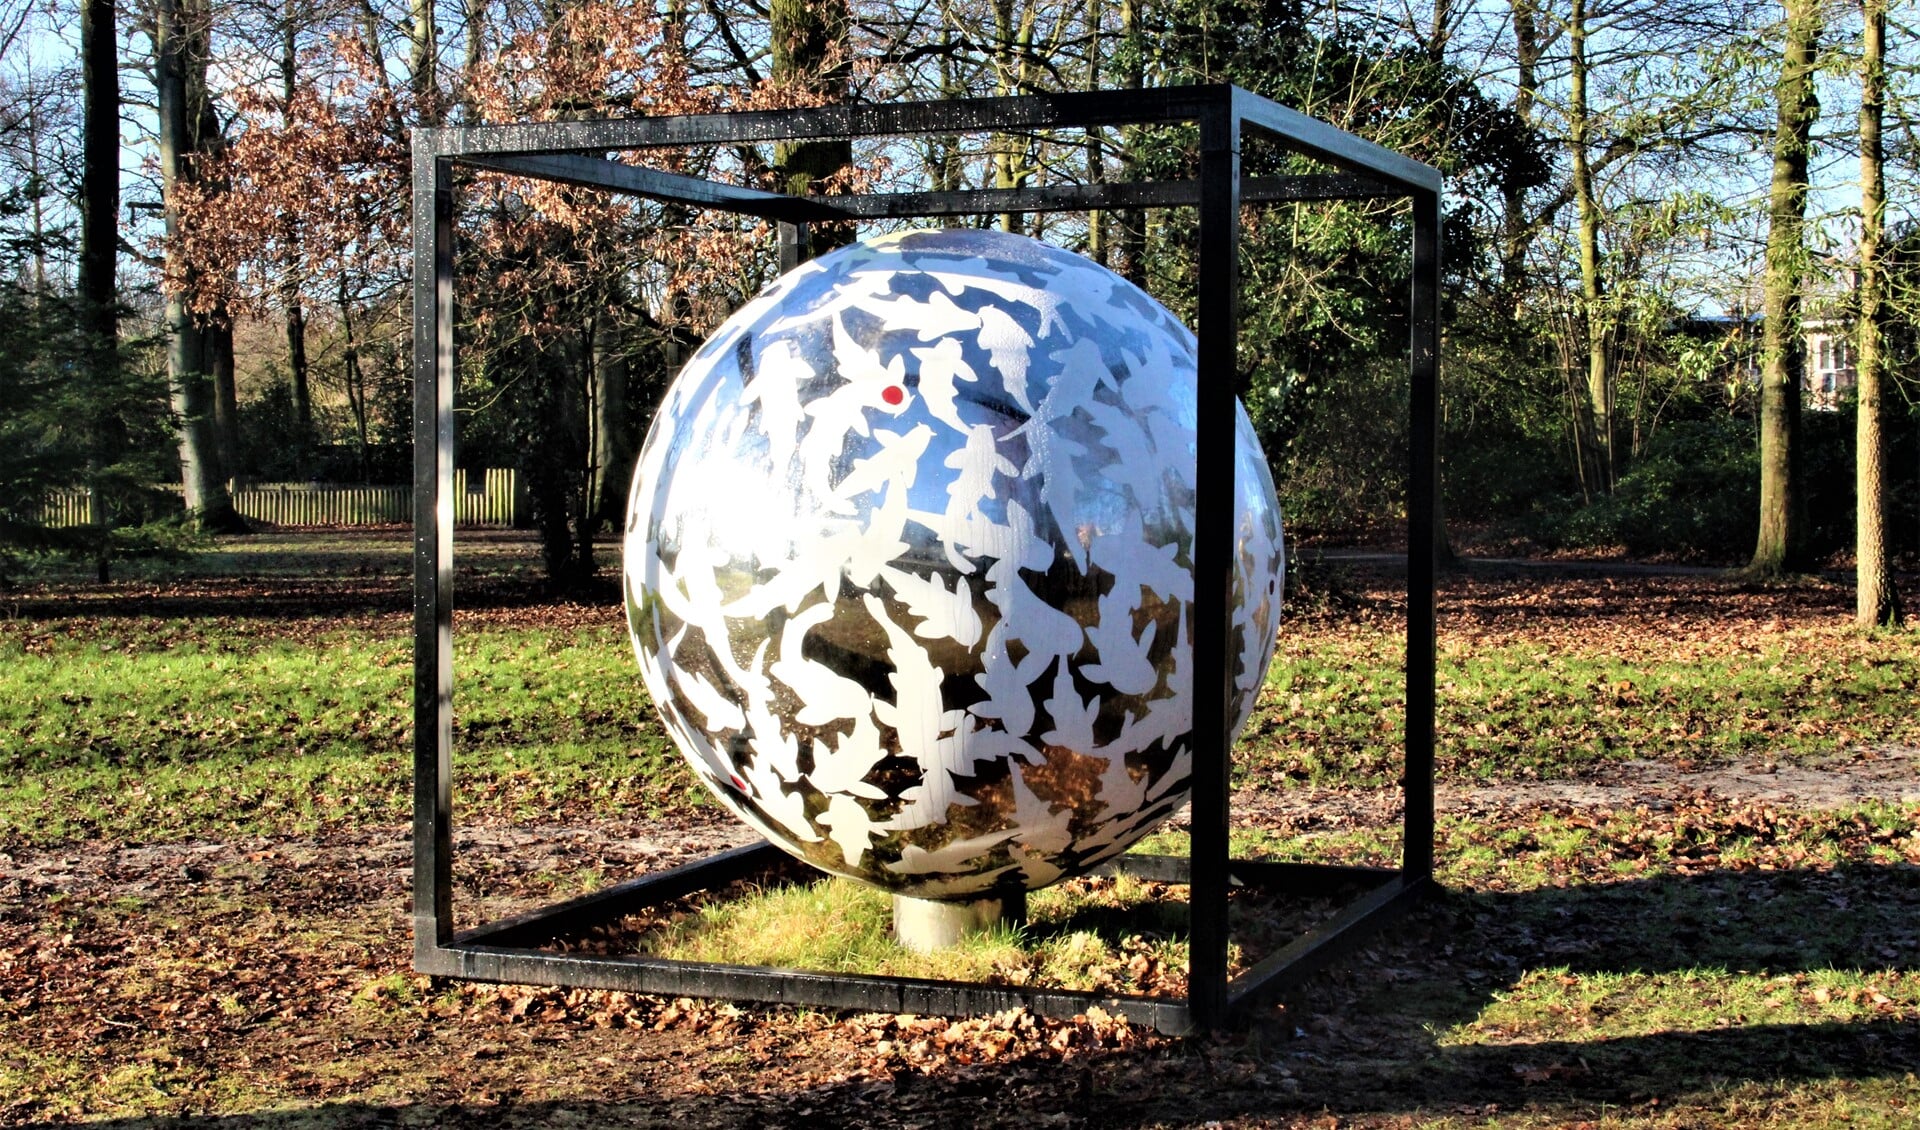 ‘Together We Are’een beeld van William Rosewood in Park Vreugd en Rust, zijde Parkweg Voorburg Oud (foto: Marian Kokshoorn).